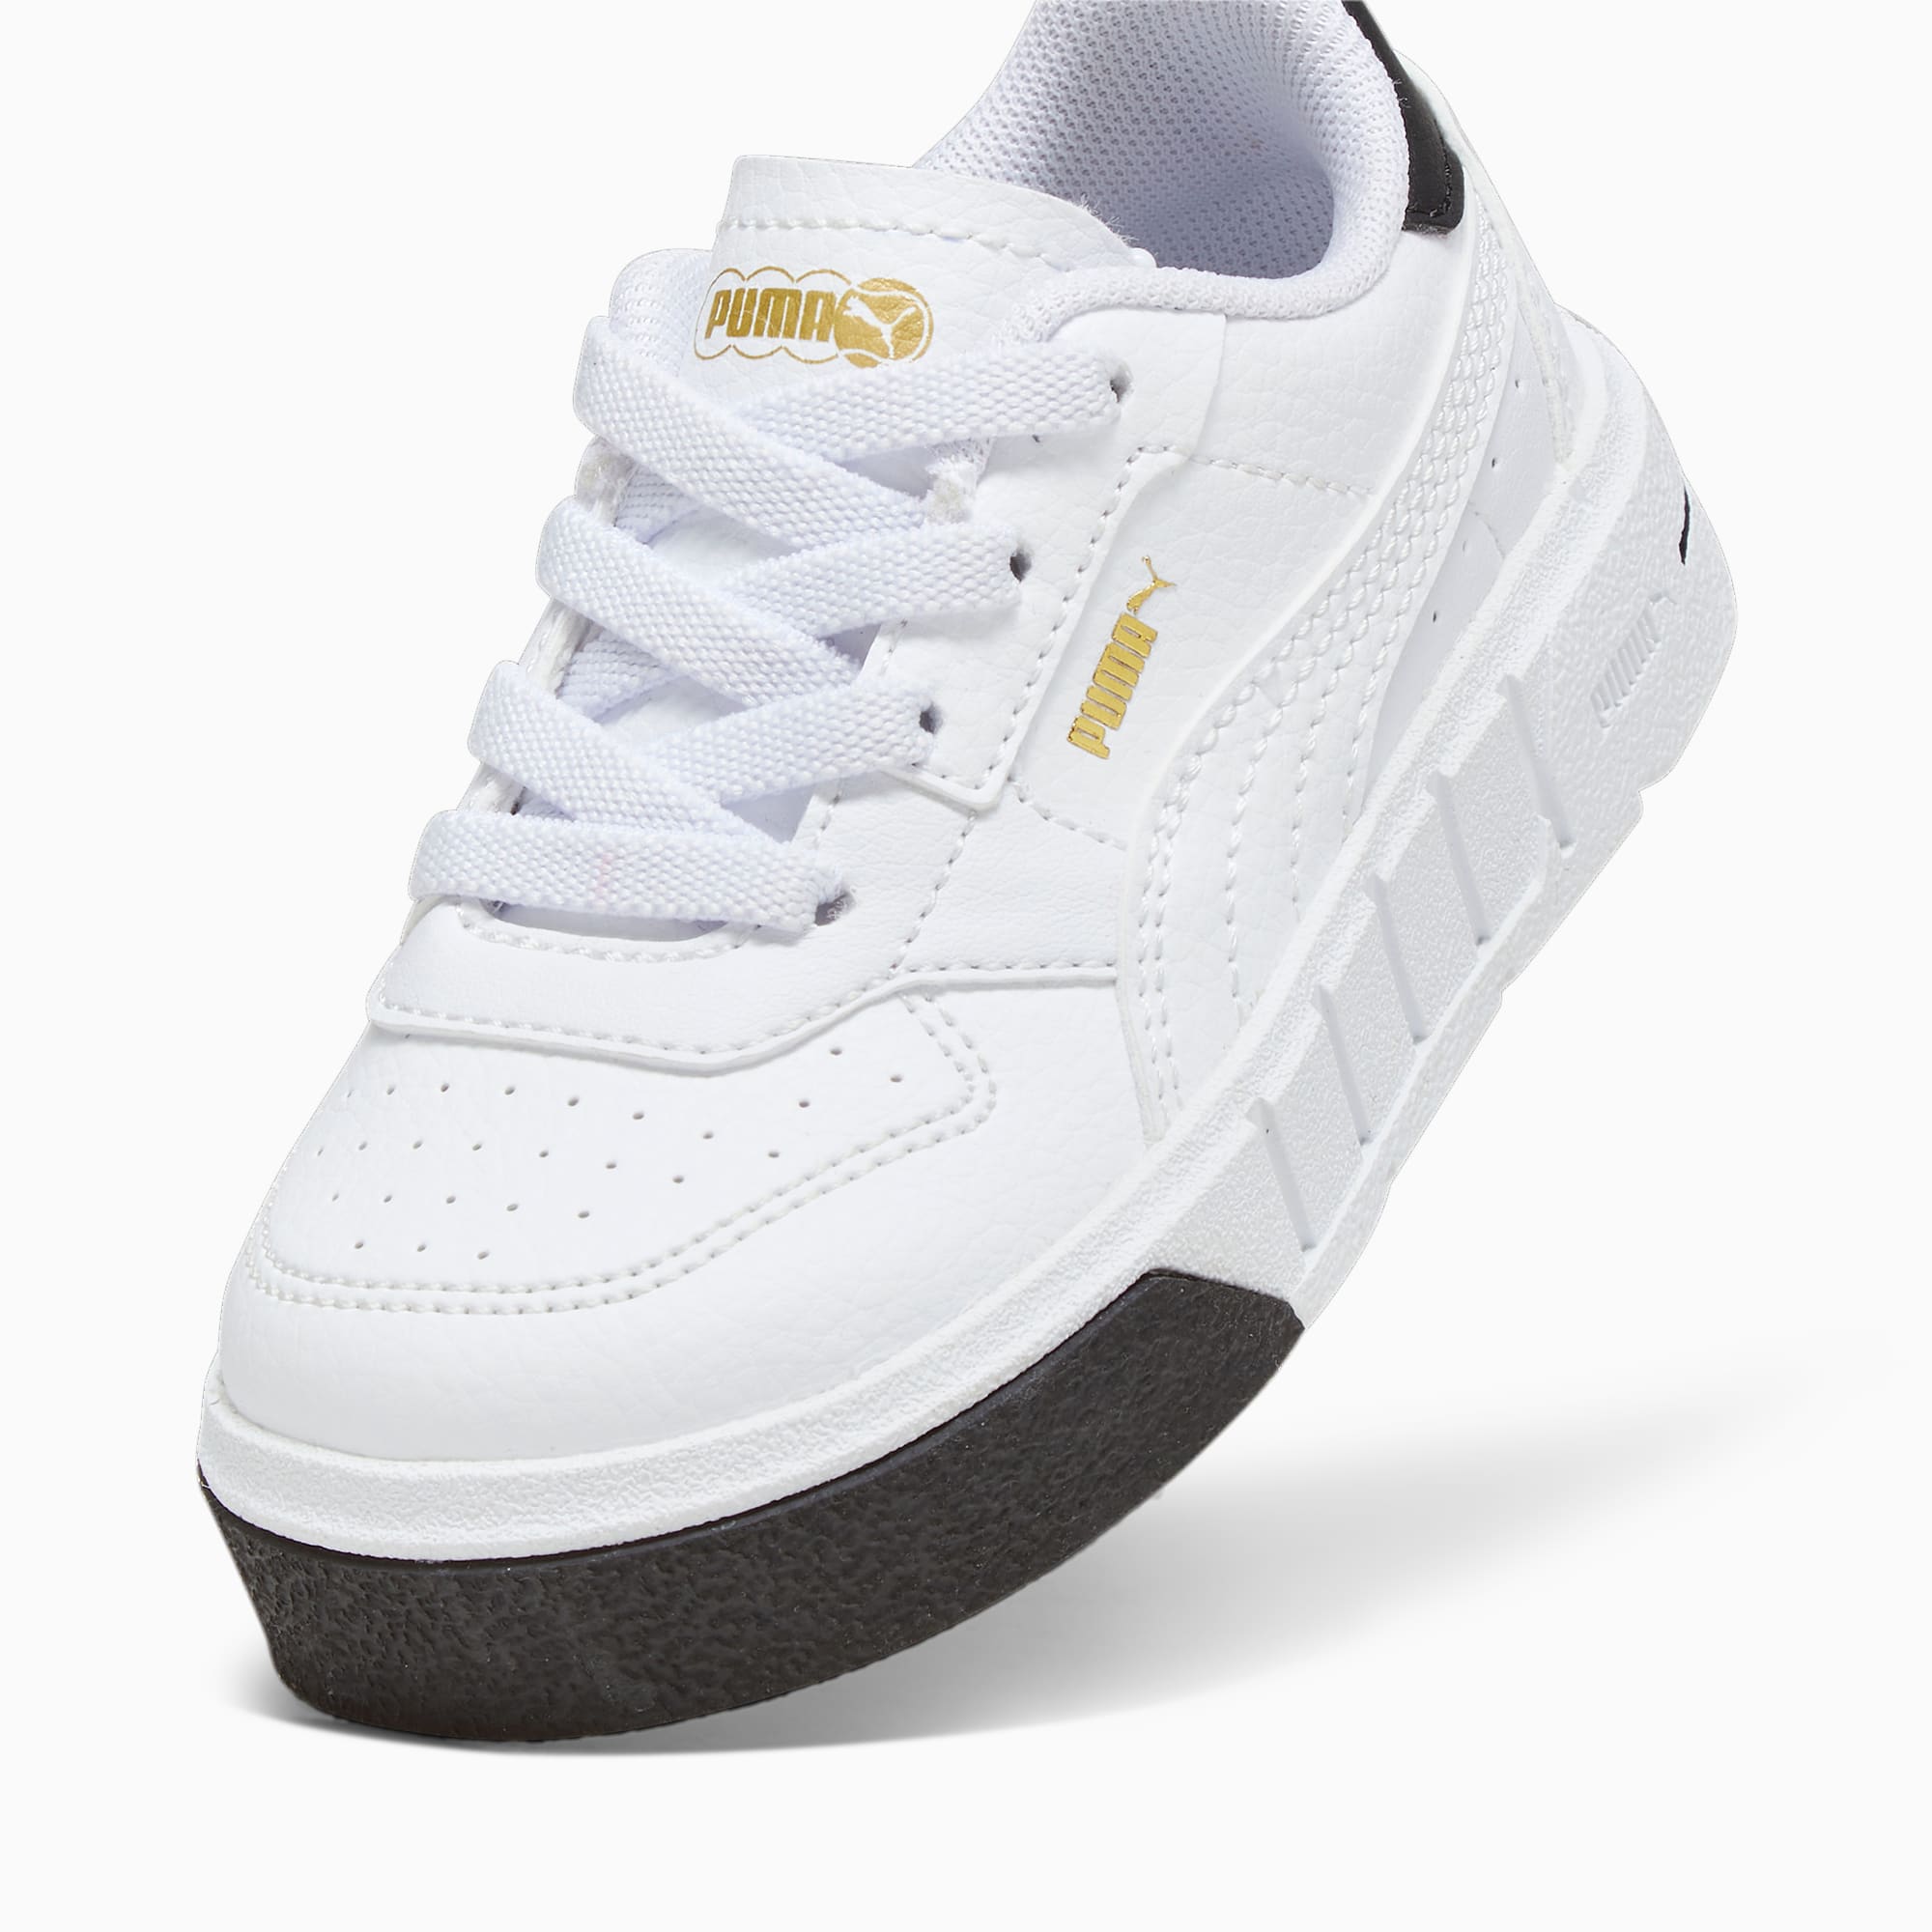 PUMA Cali Court Leder-Sneakers Babys Schuhe Für Kinder, Weiß/Schwarz, Größe: 20, Schuhe